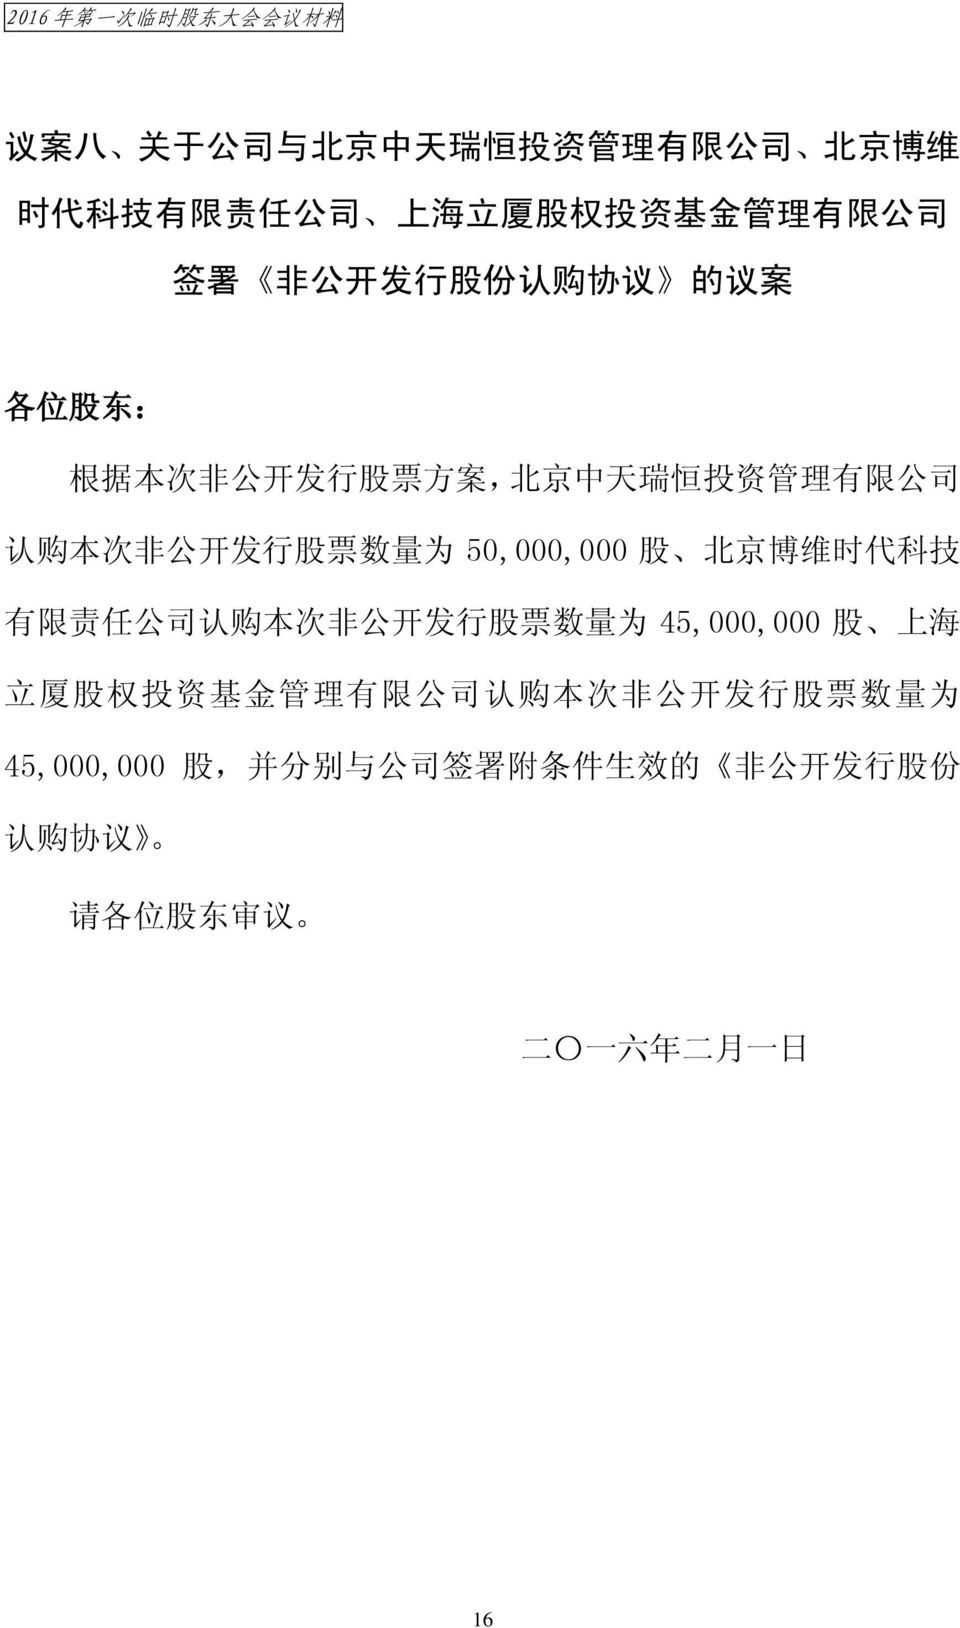 次 非 公 开 发 行 股 票 数 量 为 50,000,000 股 北 京 博 维 时 代 科 技 有 限 责 任 公 司 认 购 本 次 非 公 开 发 行 股 票 数 量 为 45,000,000 股 上 海 立 厦 股